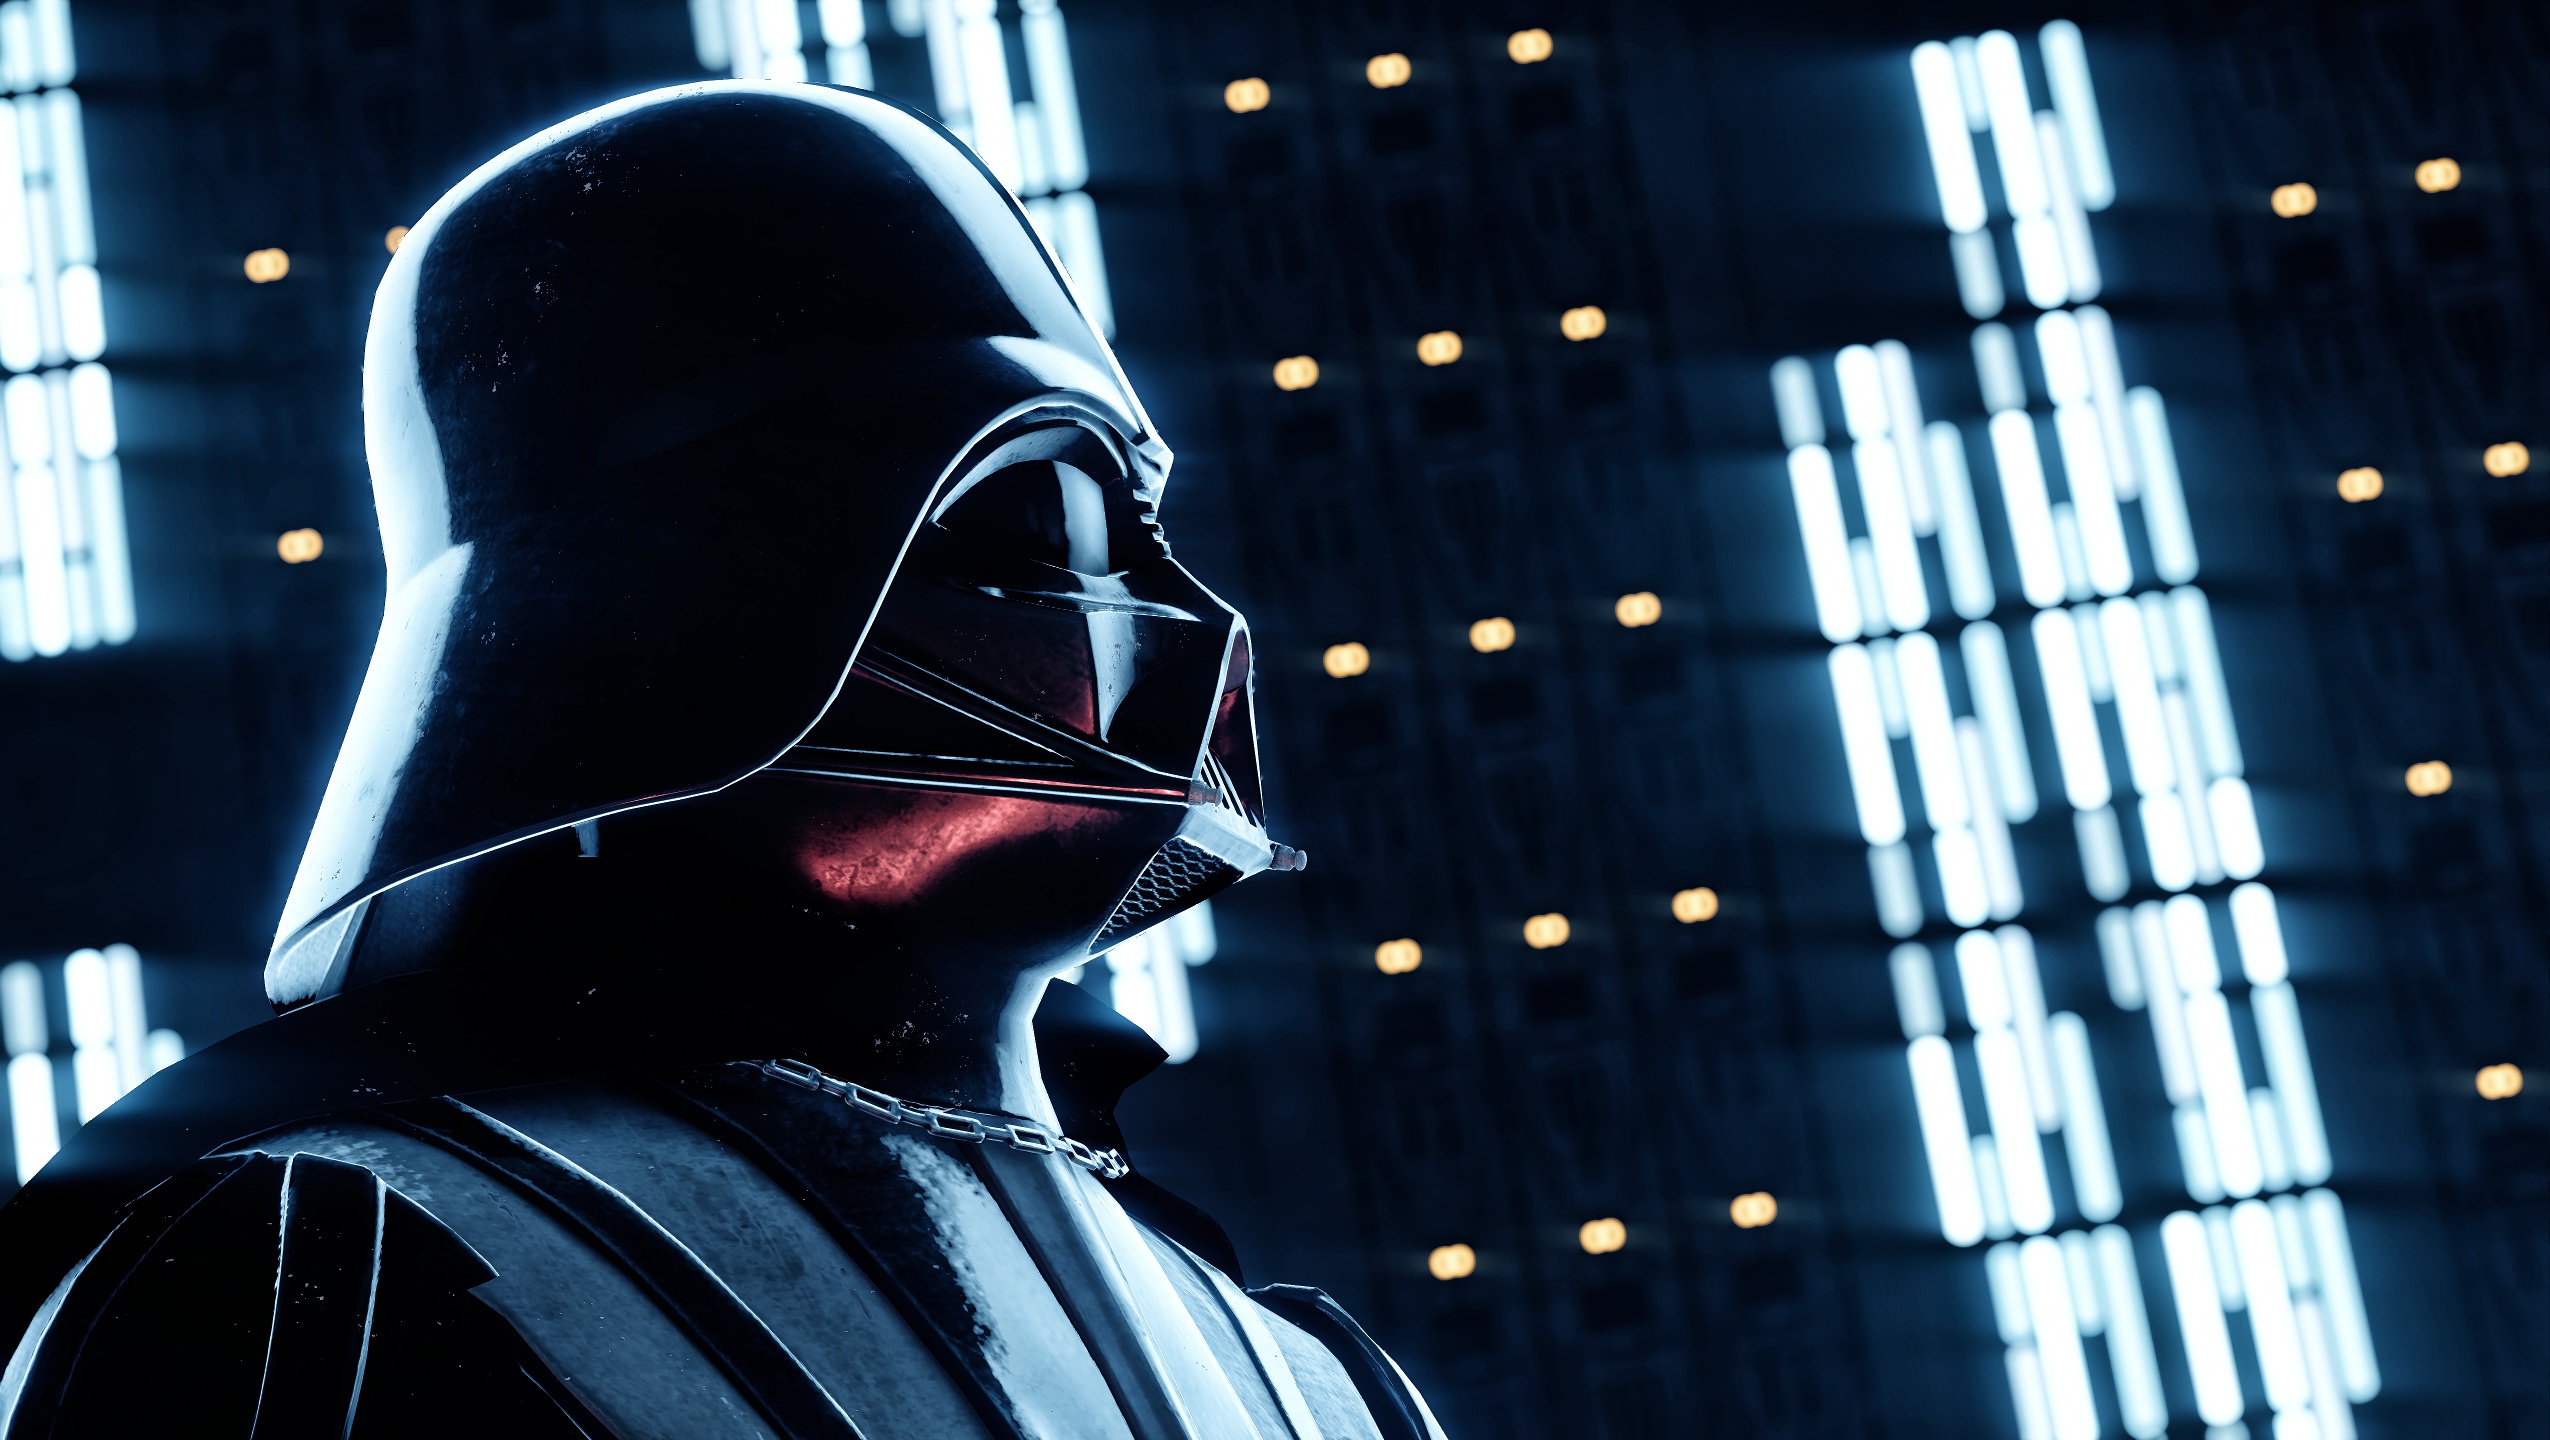 Darth Vader Star Wars Star Wars Battlefront Ii 2017 2550x1440